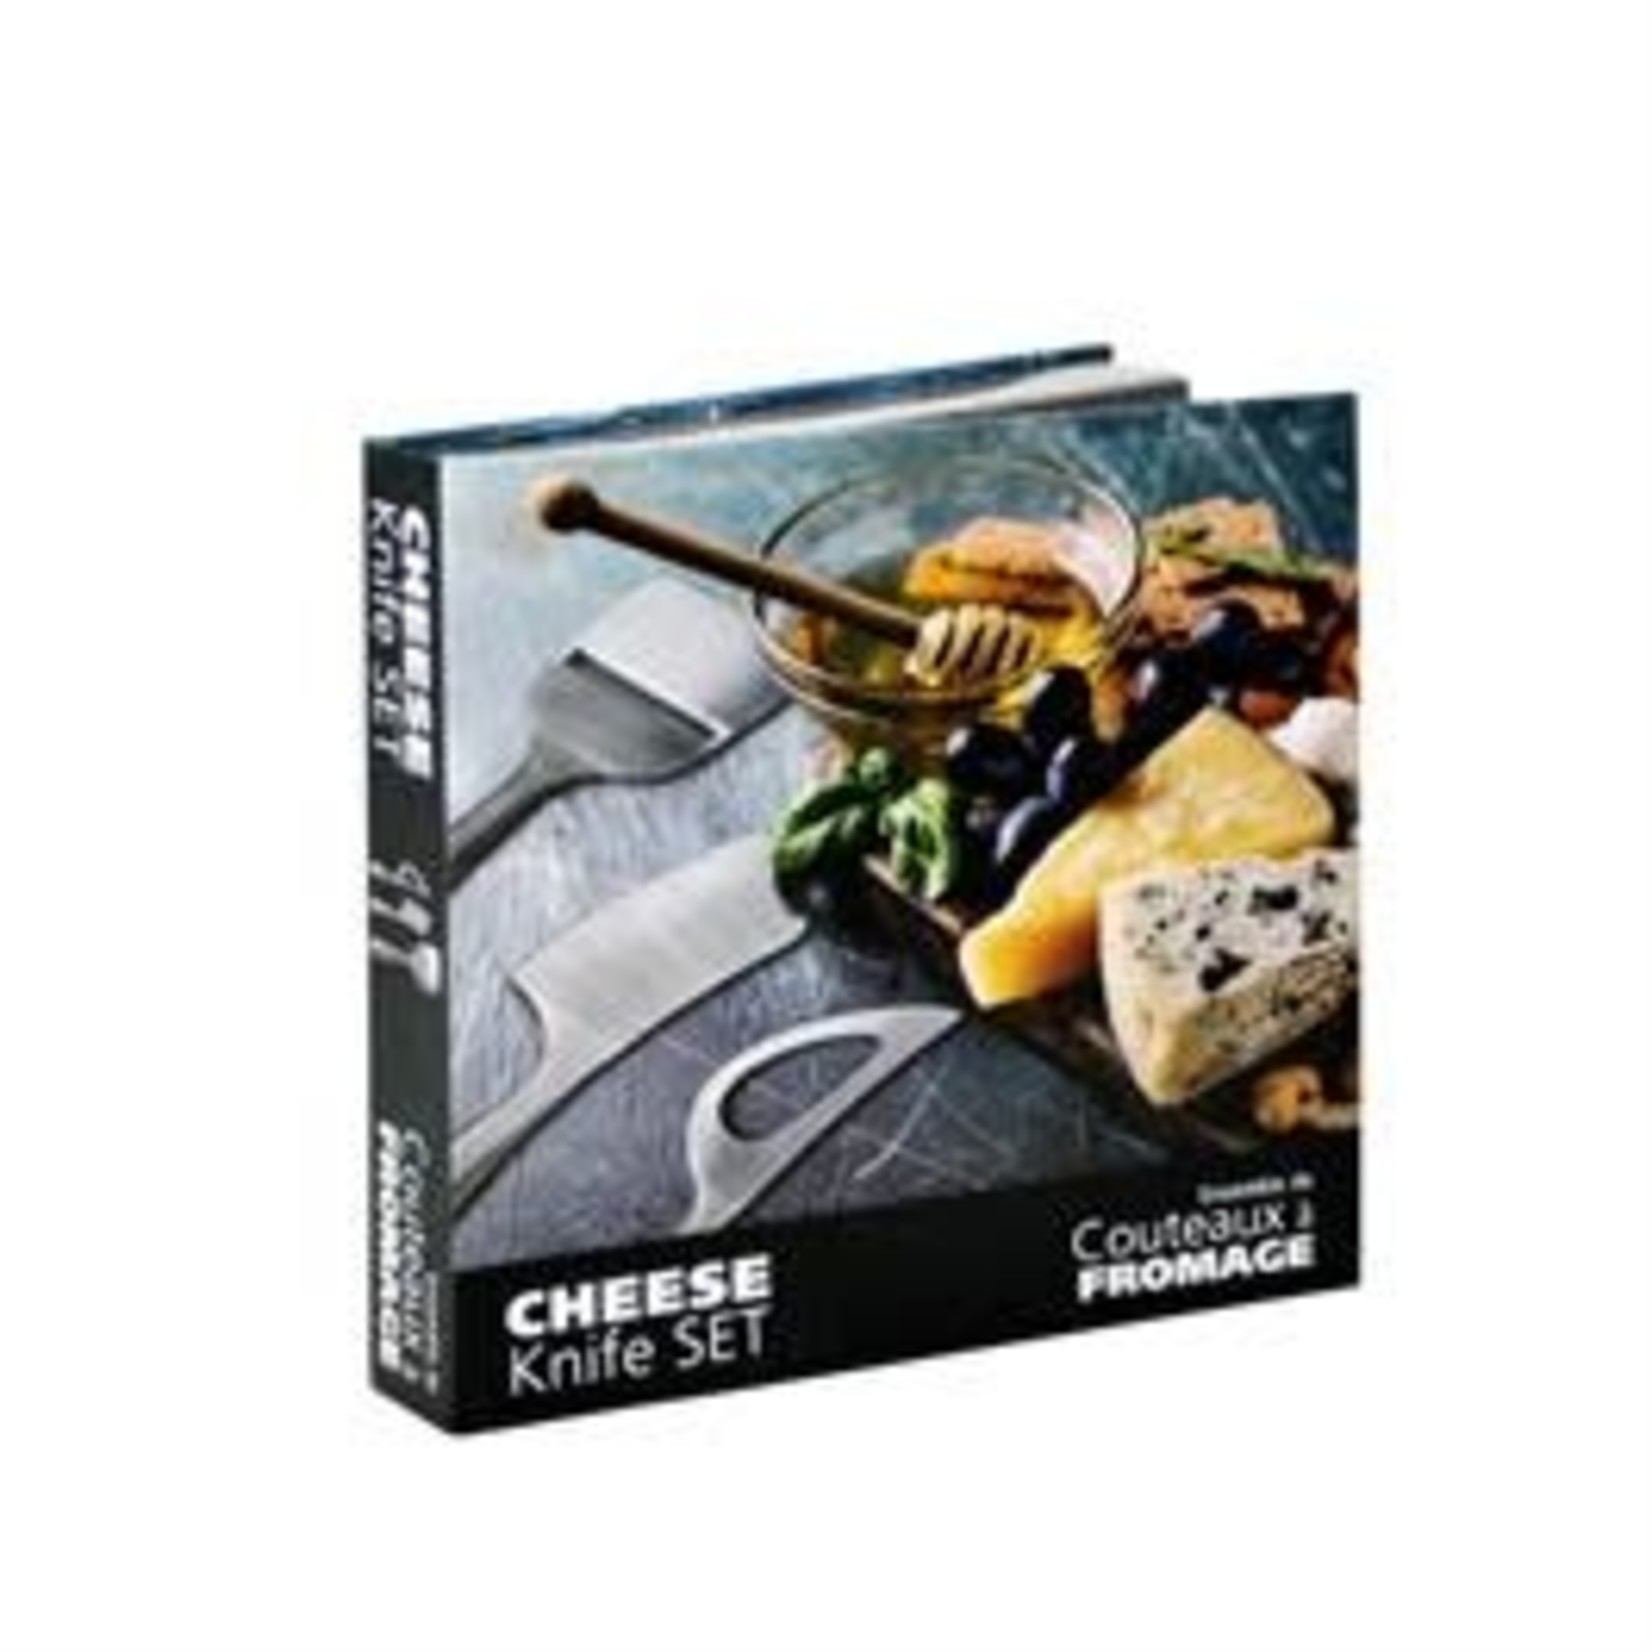 Danesco Couteaux à fromage Argent - Ensemble de 3